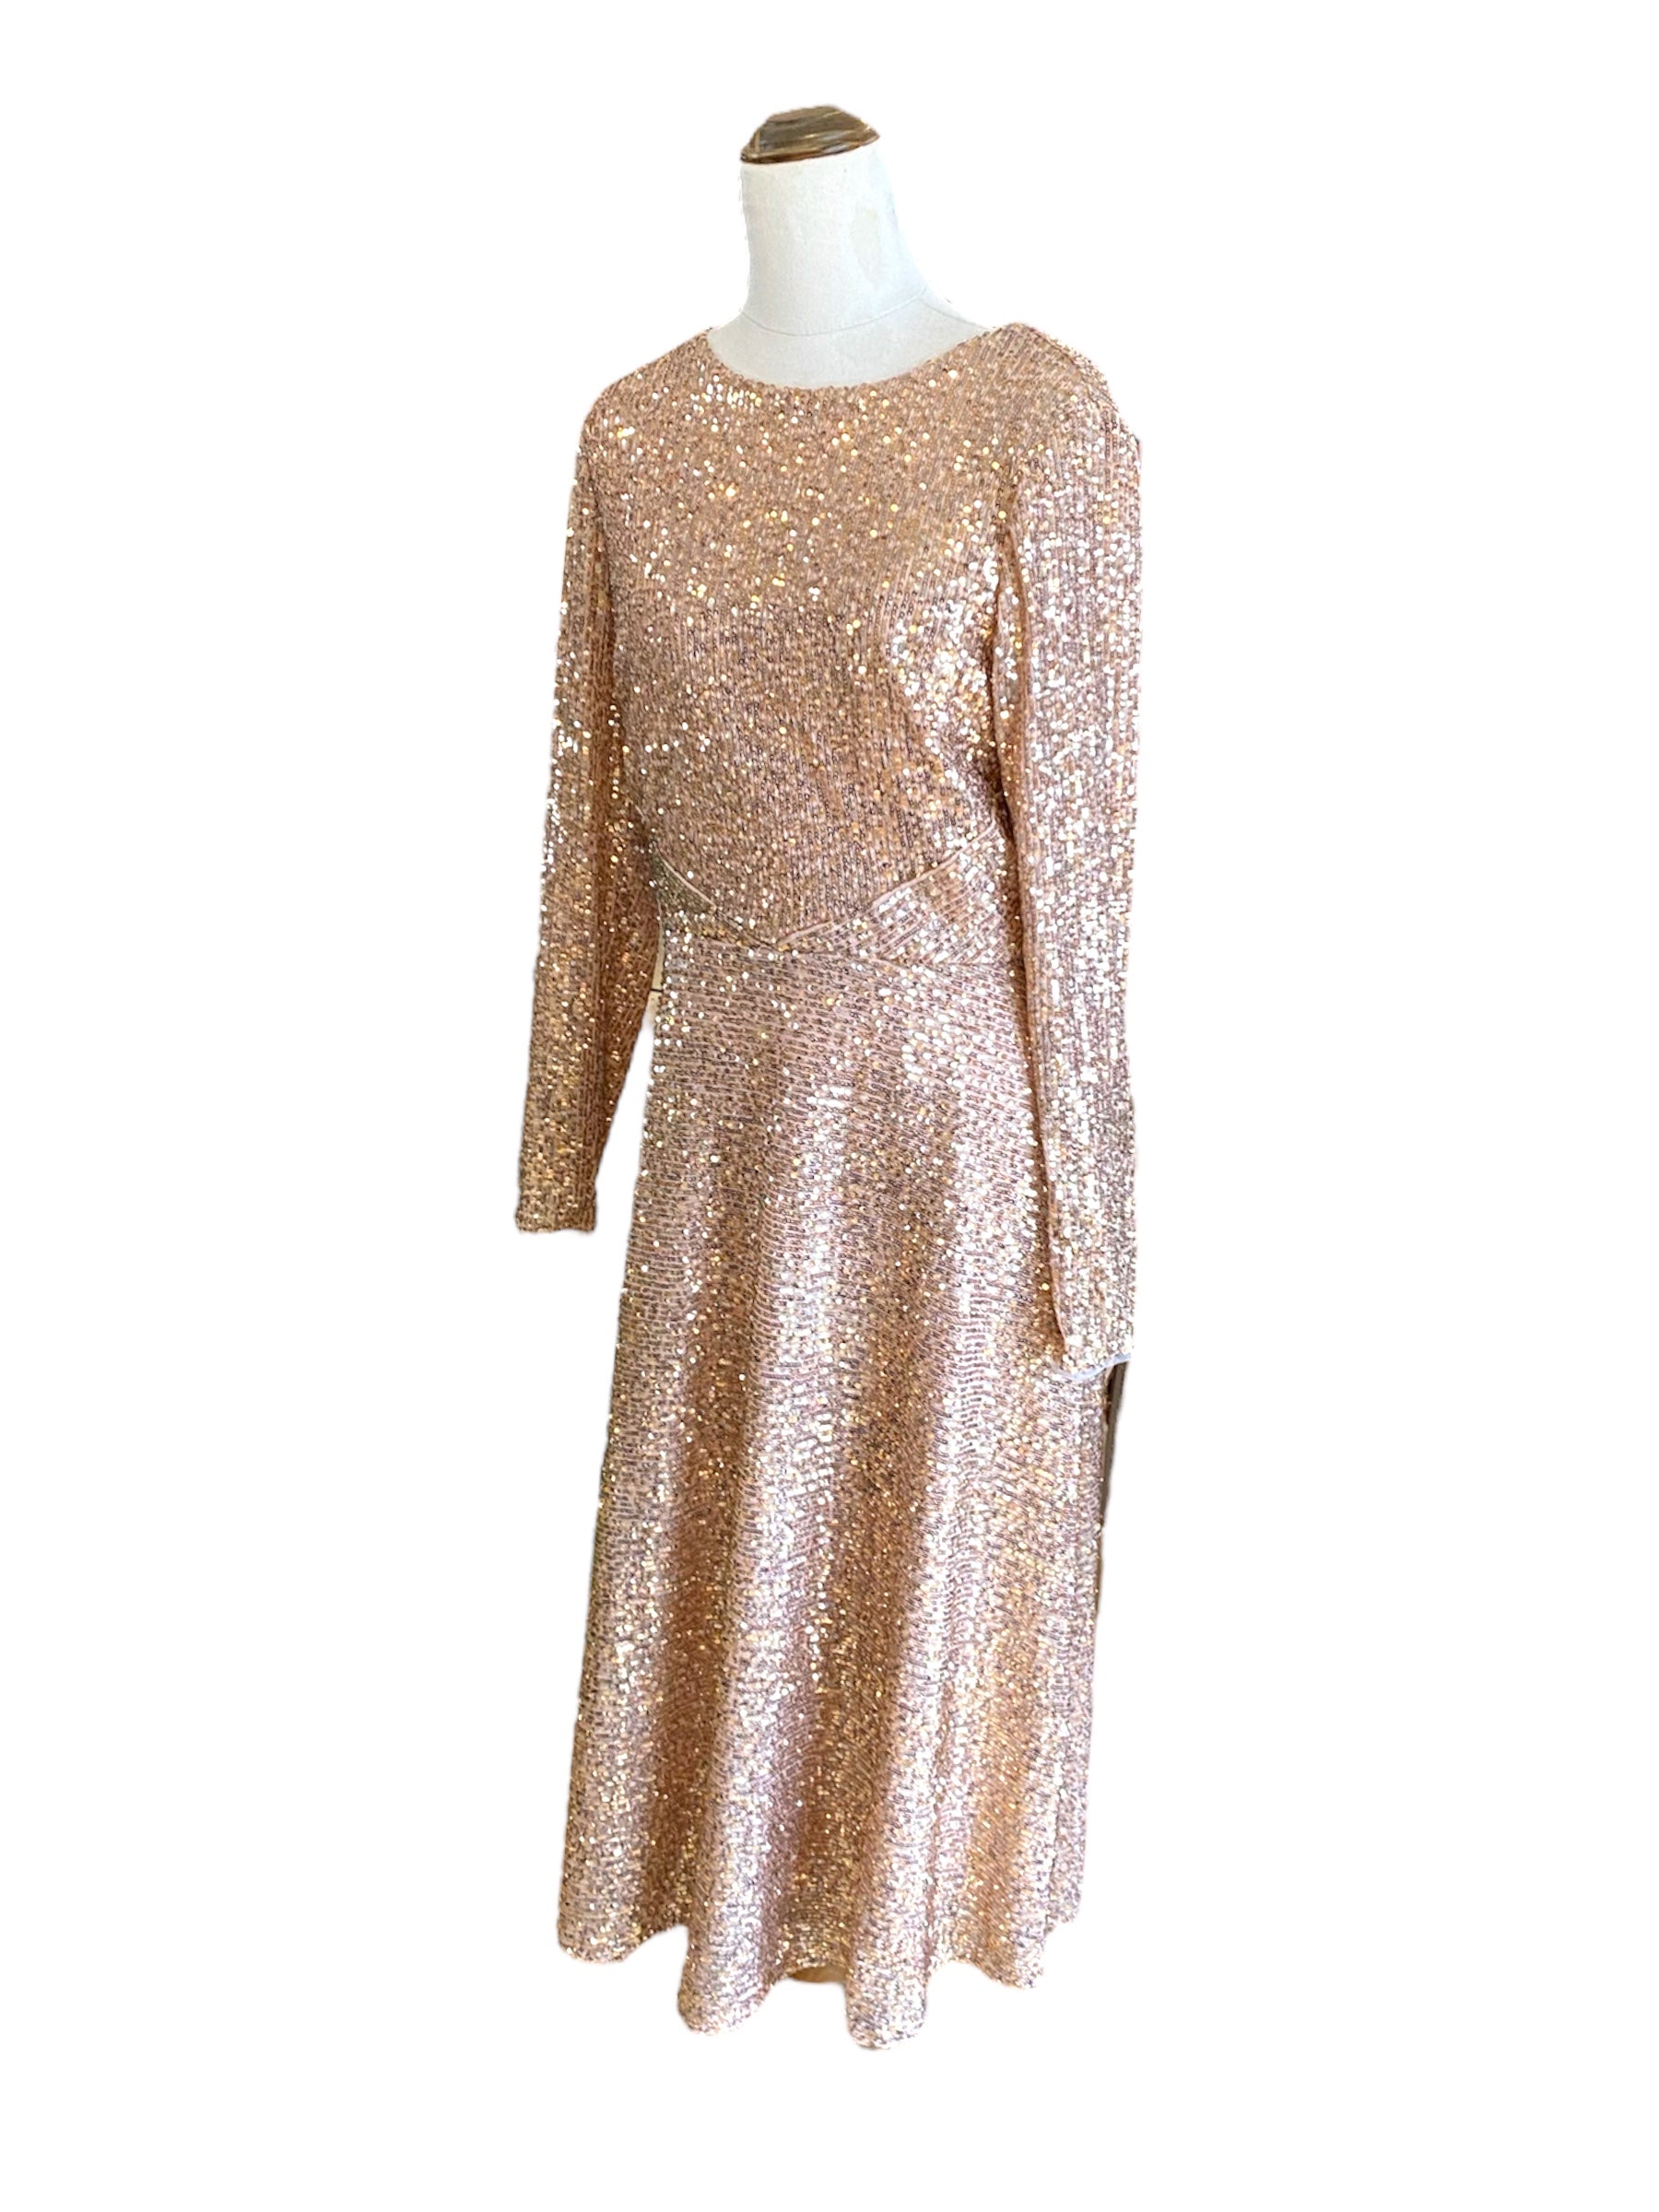 TFNC Sequin Dress | Size S